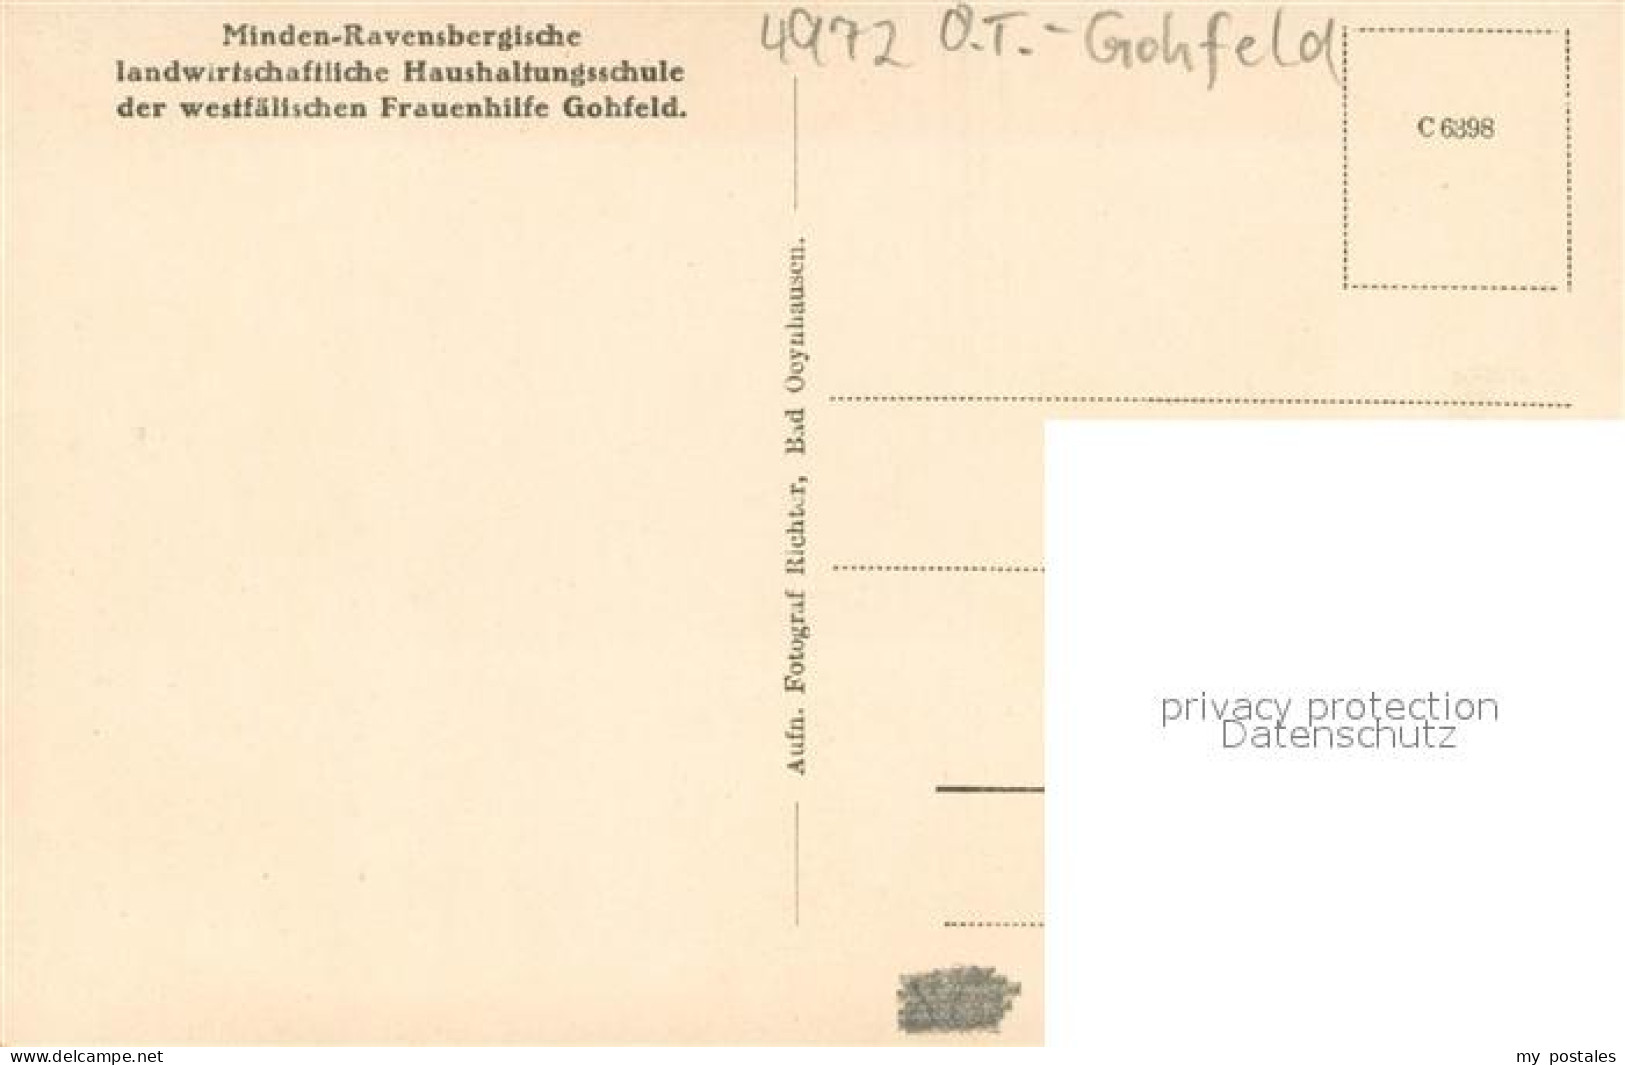 73703999 Gohfeld Herford Minden-Ravensbergische Landwirtschaftliche Haushaltungs - To Identify